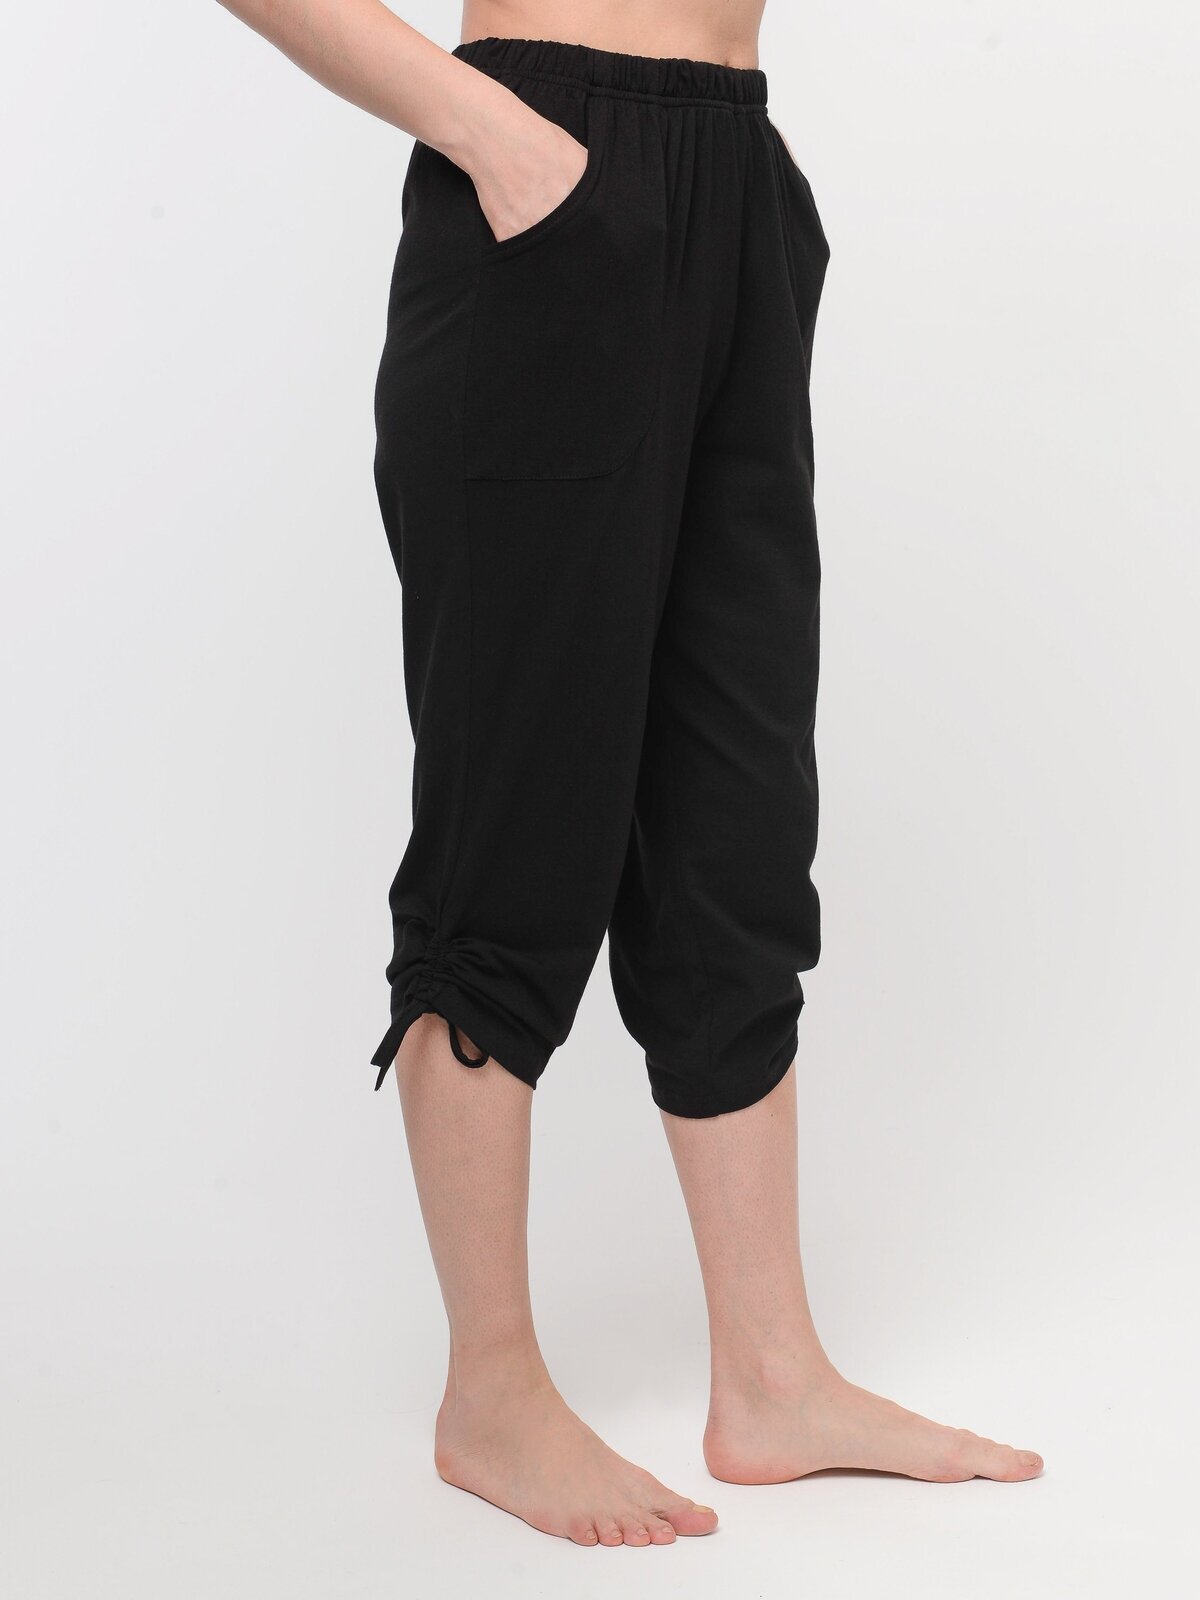 Пижама домашняя женская Алтекс футболка с бриджами черно-белая, размер 58 - фотография № 11